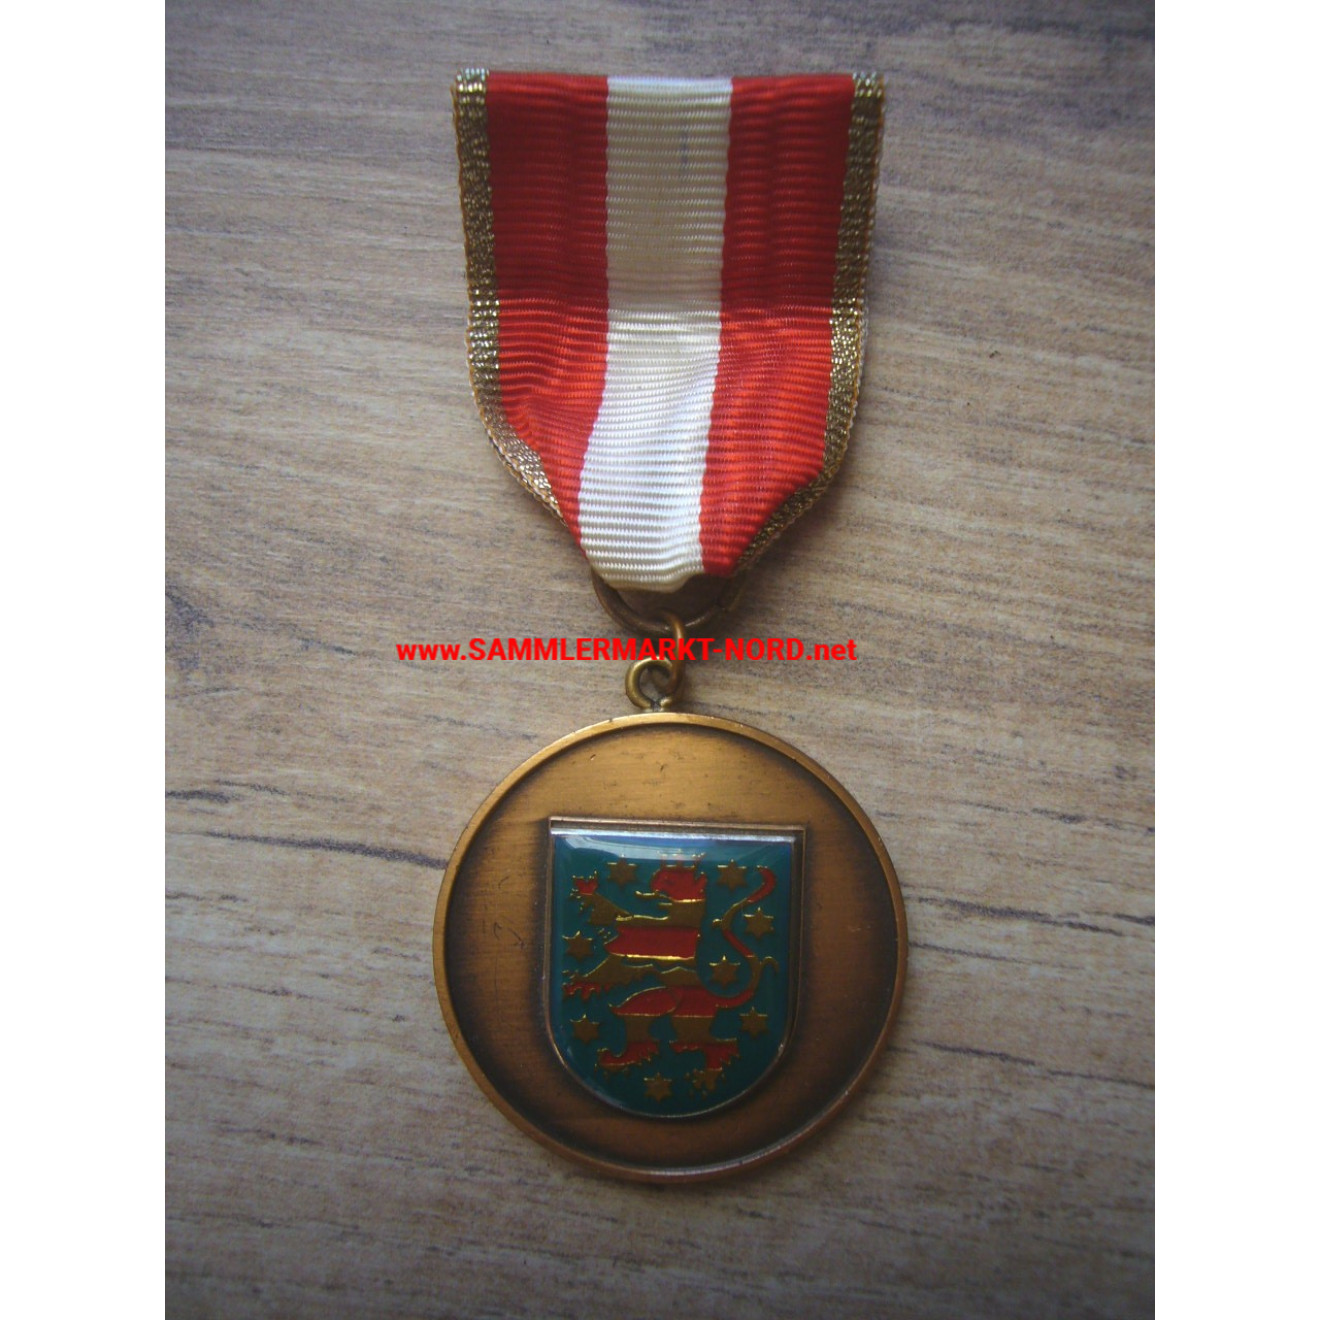 Feuerwehr Thüringen - Medaille für Verdienste im Brandschutz